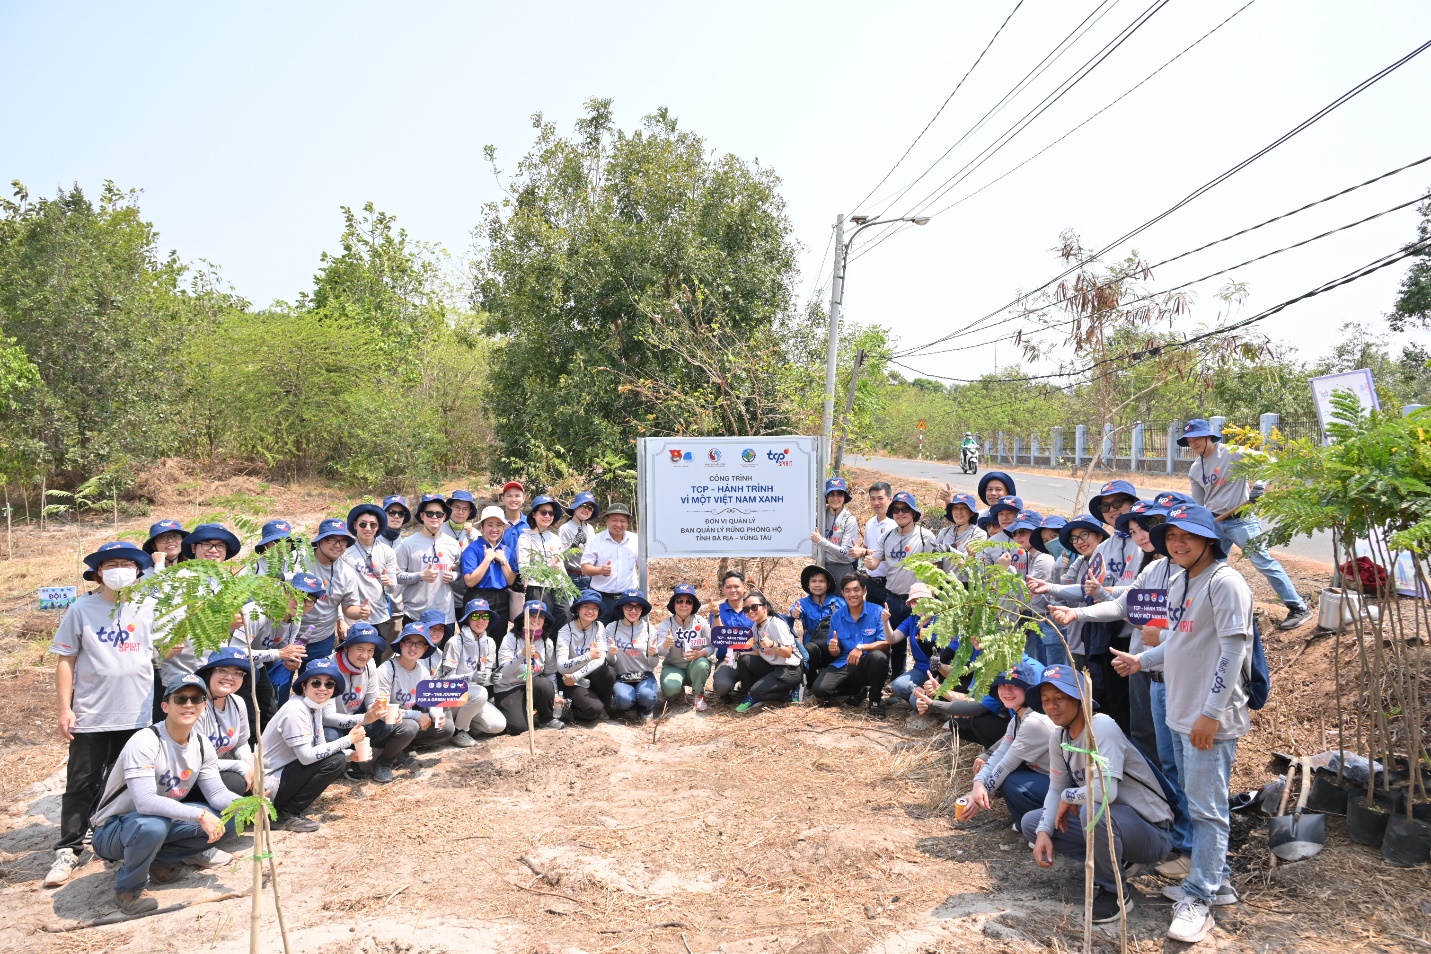 Khởi động chương trình “TCP – Hành trình vì một Việt Nam xanh” chung sức trồng 2.700 cây xanh tại tỉnh Bà Rịa - Vũng- Ảnh 1.